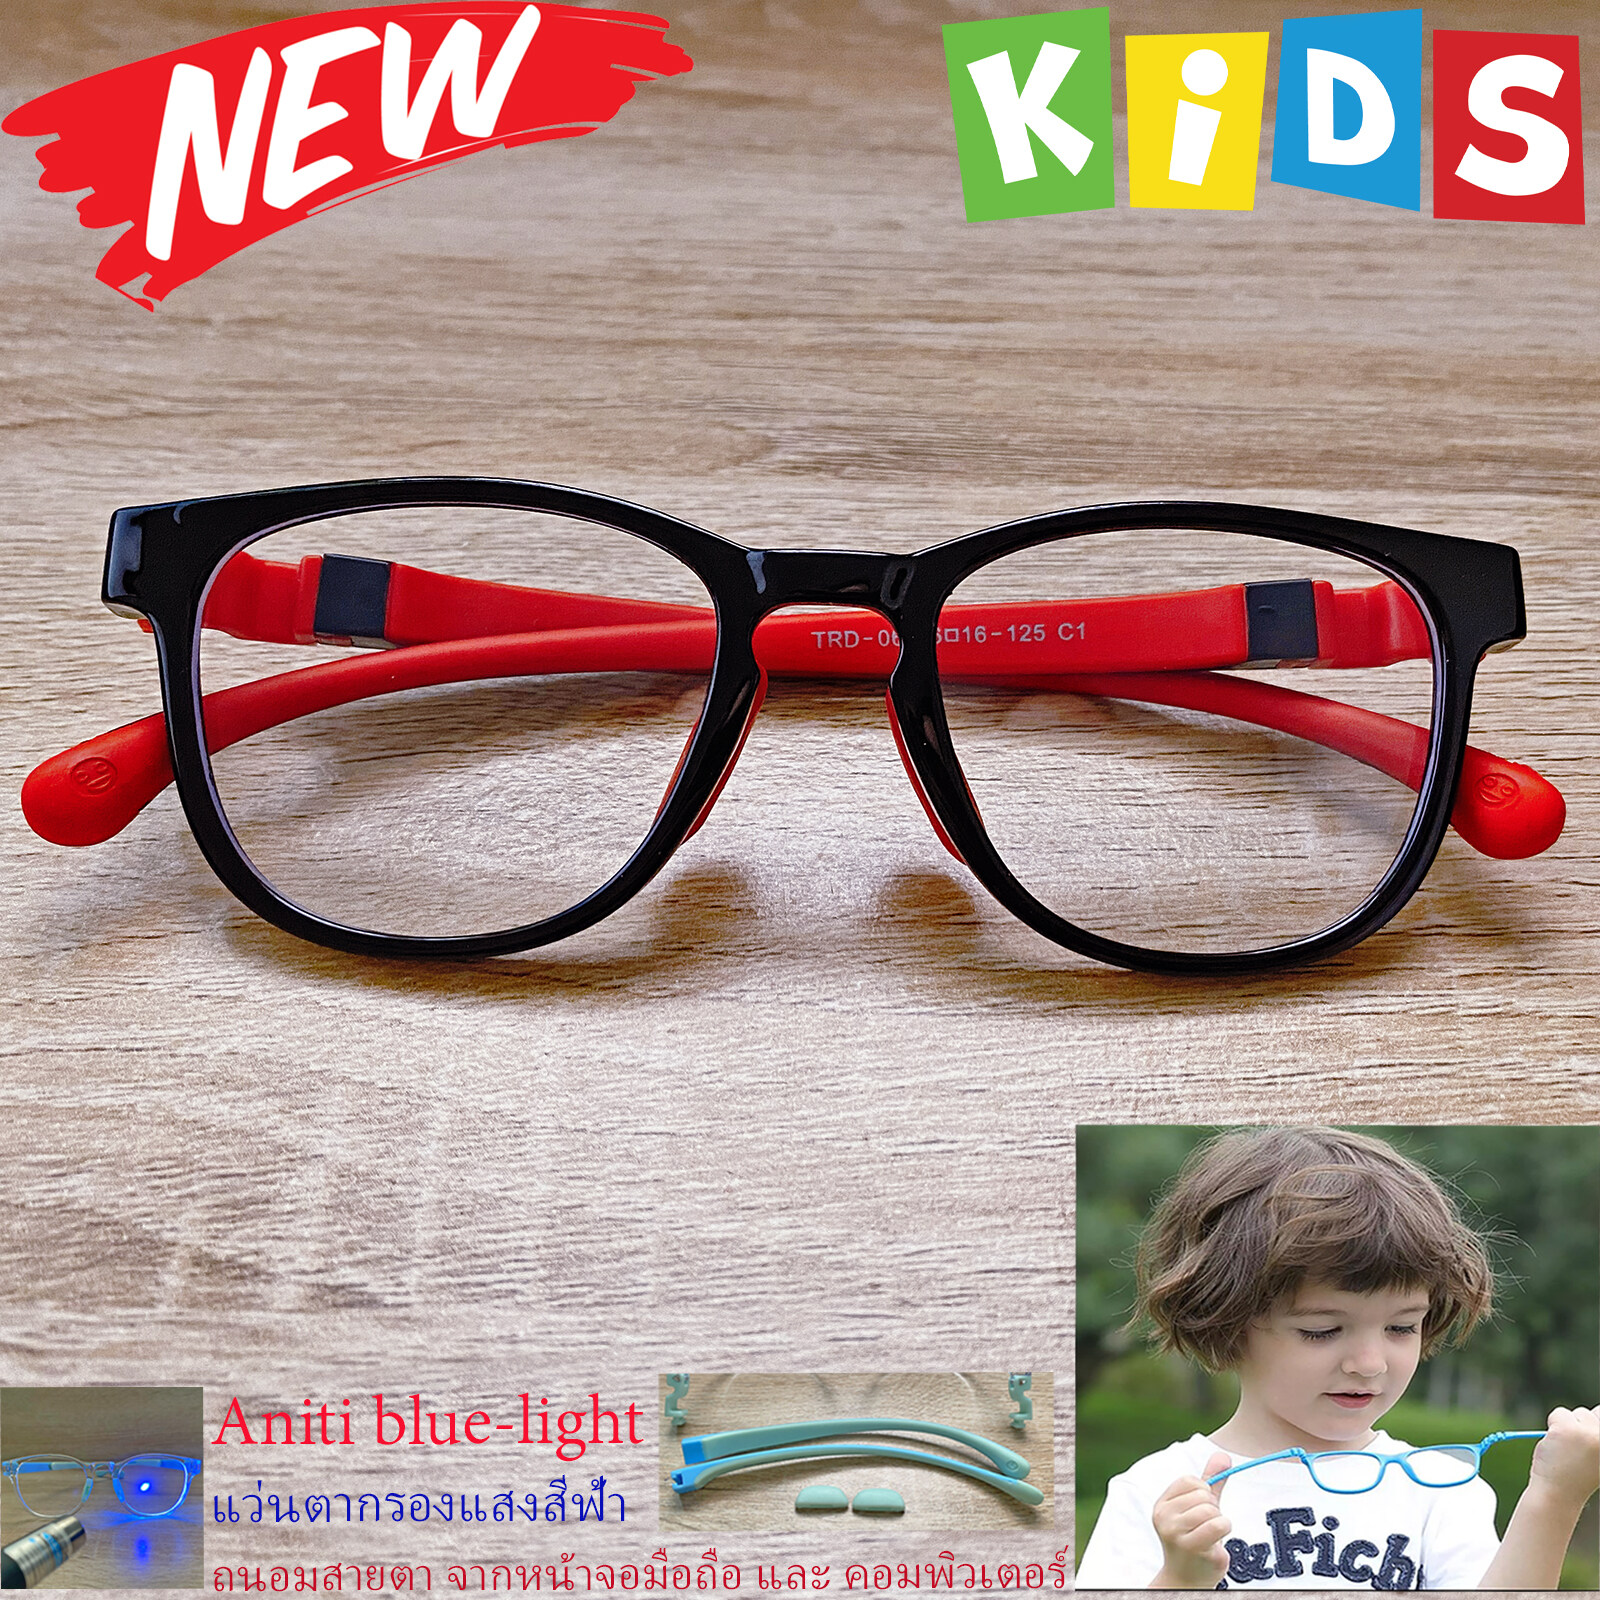 กรอบแว่นตาเด็ก กรองแสง สีฟ้า blue block แว่นเด็ก บลูบล็อค รุ่น 06 สีดำ ขาข้อต่อยืดหยุ่น ถอดขาเปลี่ยนได้ วัสดุTR90 เหมาะสำหรับเลนส์สายตา